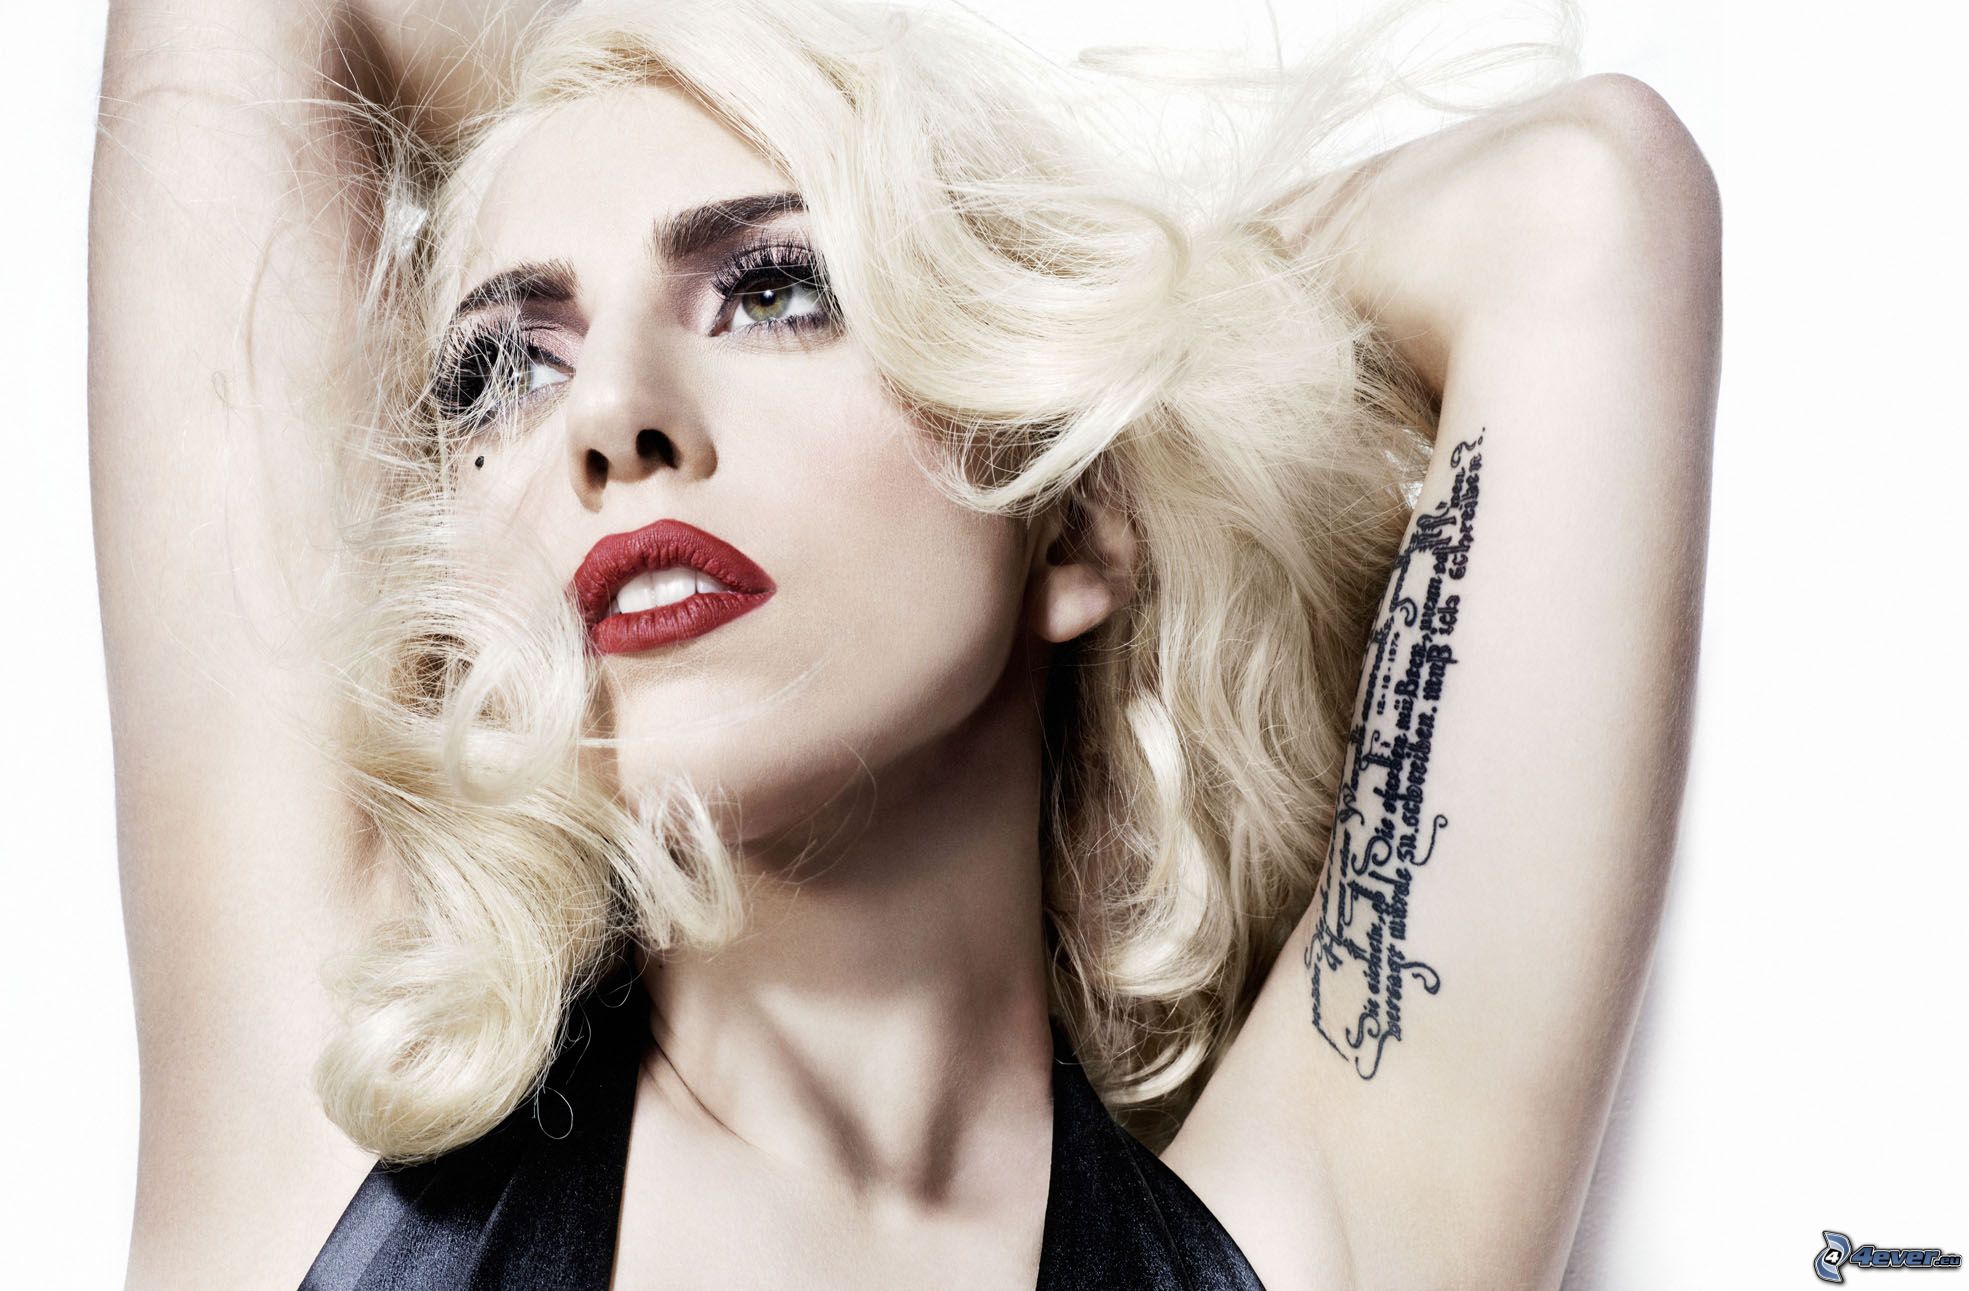 La estrella pop Lady Gaga; recientemente dio a conocer que se convirtió en maestra por un día. Esto, con motivo de la creación de un comercial en pro de la Educación Pública